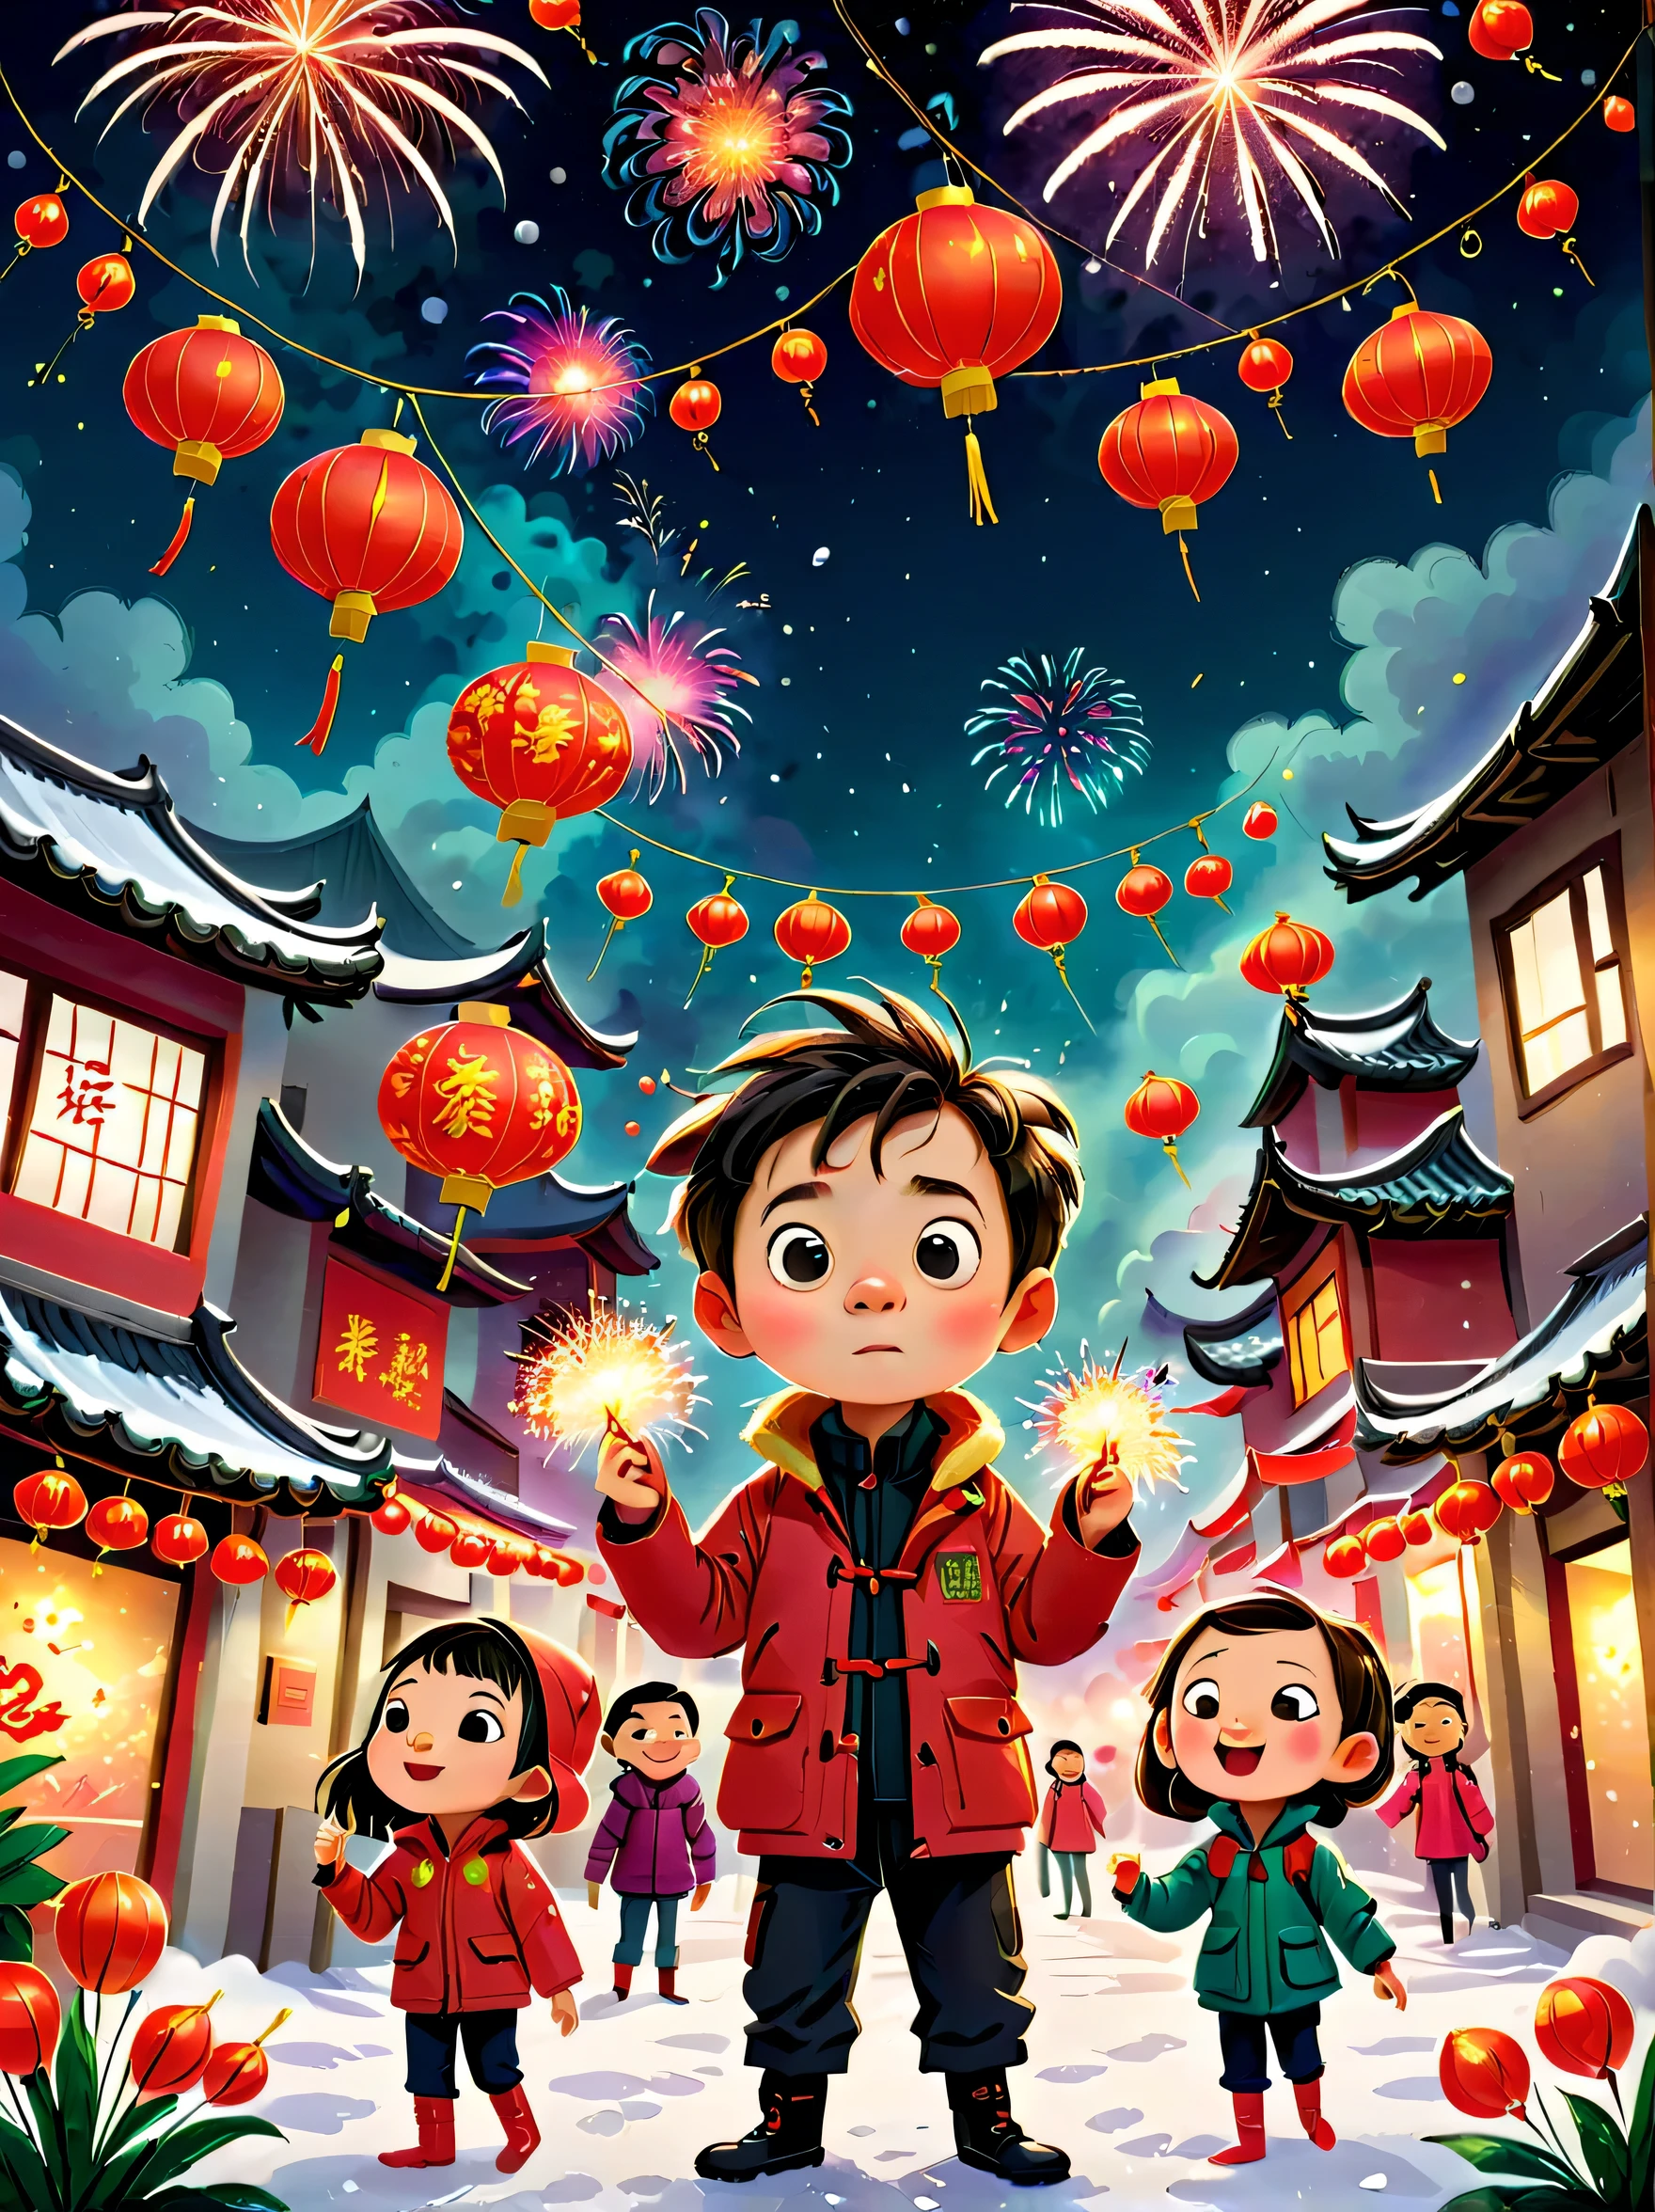 Kinderbuch, (Tim Burton-Stil)，(Illustrationen fangen die Essenz des chinesischen Neujahrs ein)，(Moderne Stadt:1.2), (Laternen und Girlanden)，Es schneit，In der freudigen Atmosphäre des neuen Jahres，(5 Kinder in Daunenjacken zündeten Knallkörper)，(Es gibt viele Feuerwerke am Himmel)，das Bild war wunderschön，(Detaillierte und lebendige Kinder&#39;handgezeichnete Illustrationen)，Personen anzeigen&#39;s Ausdrücke